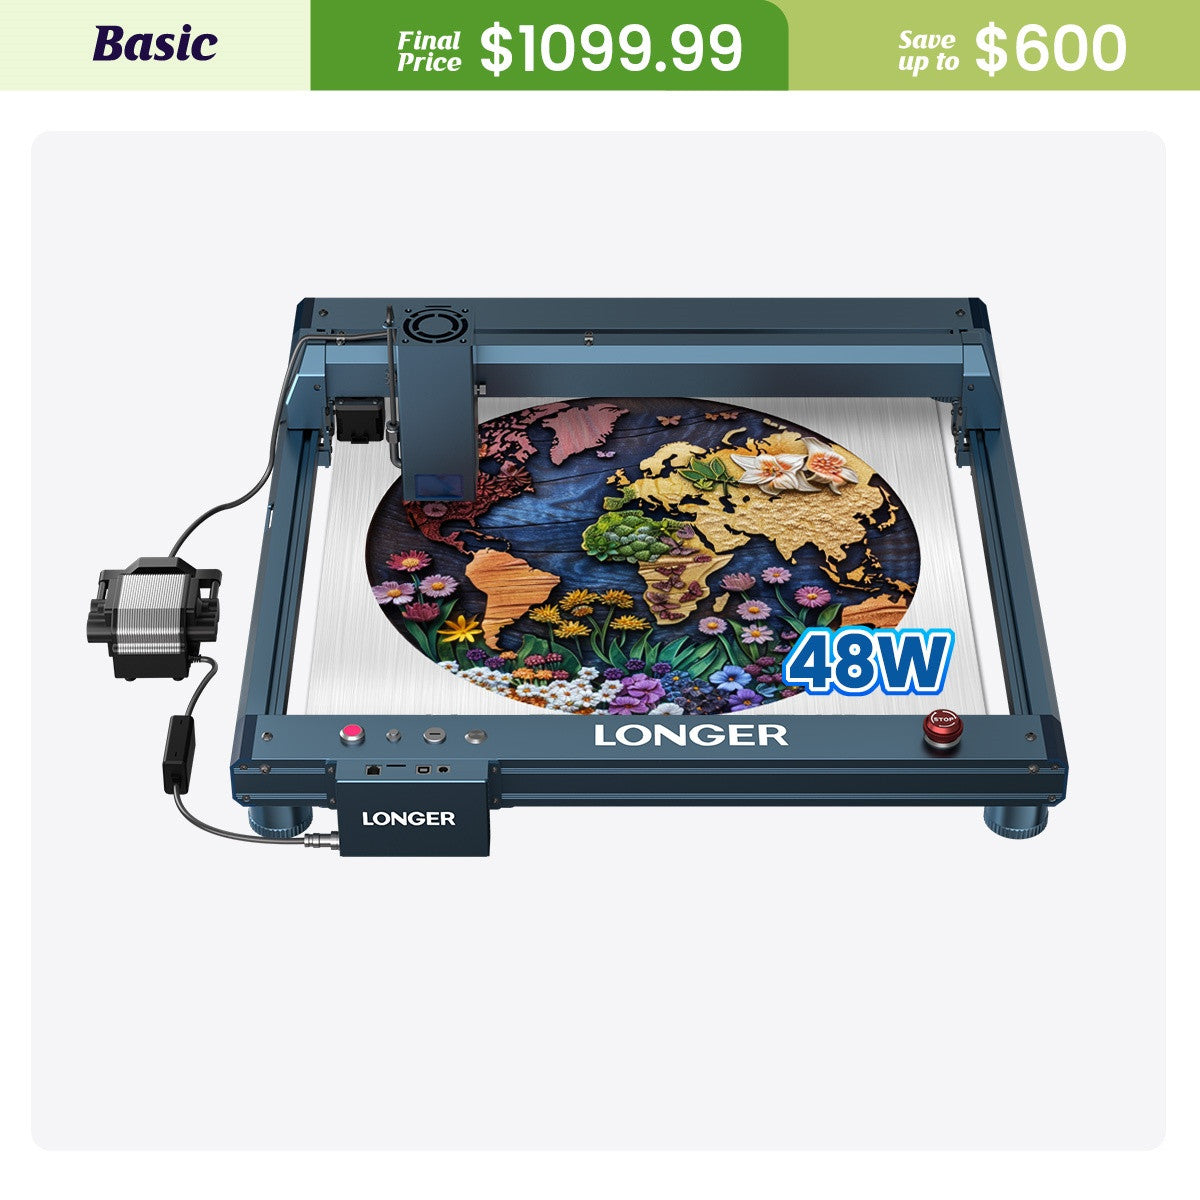 Laser B1 40W Laser Engraver